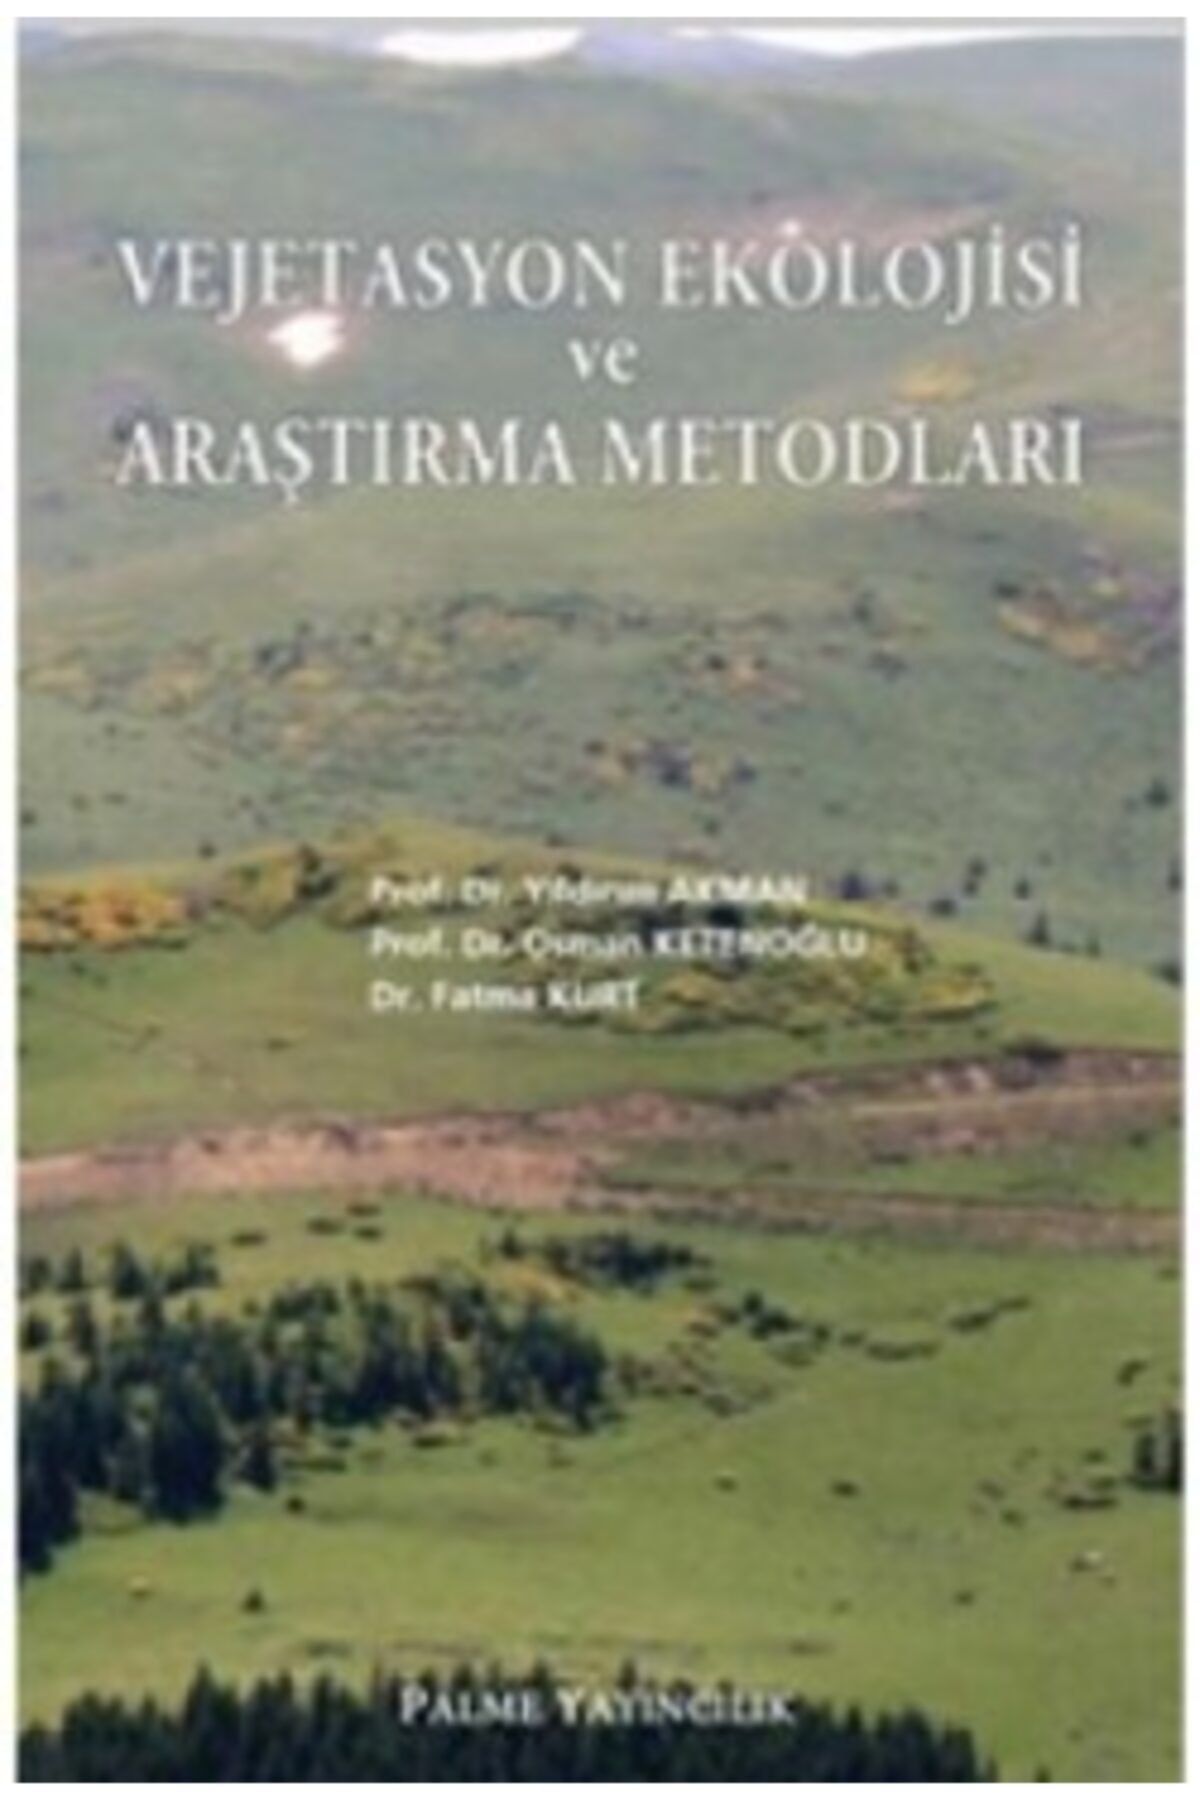 Palme Yayınevi Vejetasyon Ekolojisi Ve Araştırma Metodları Kitabı